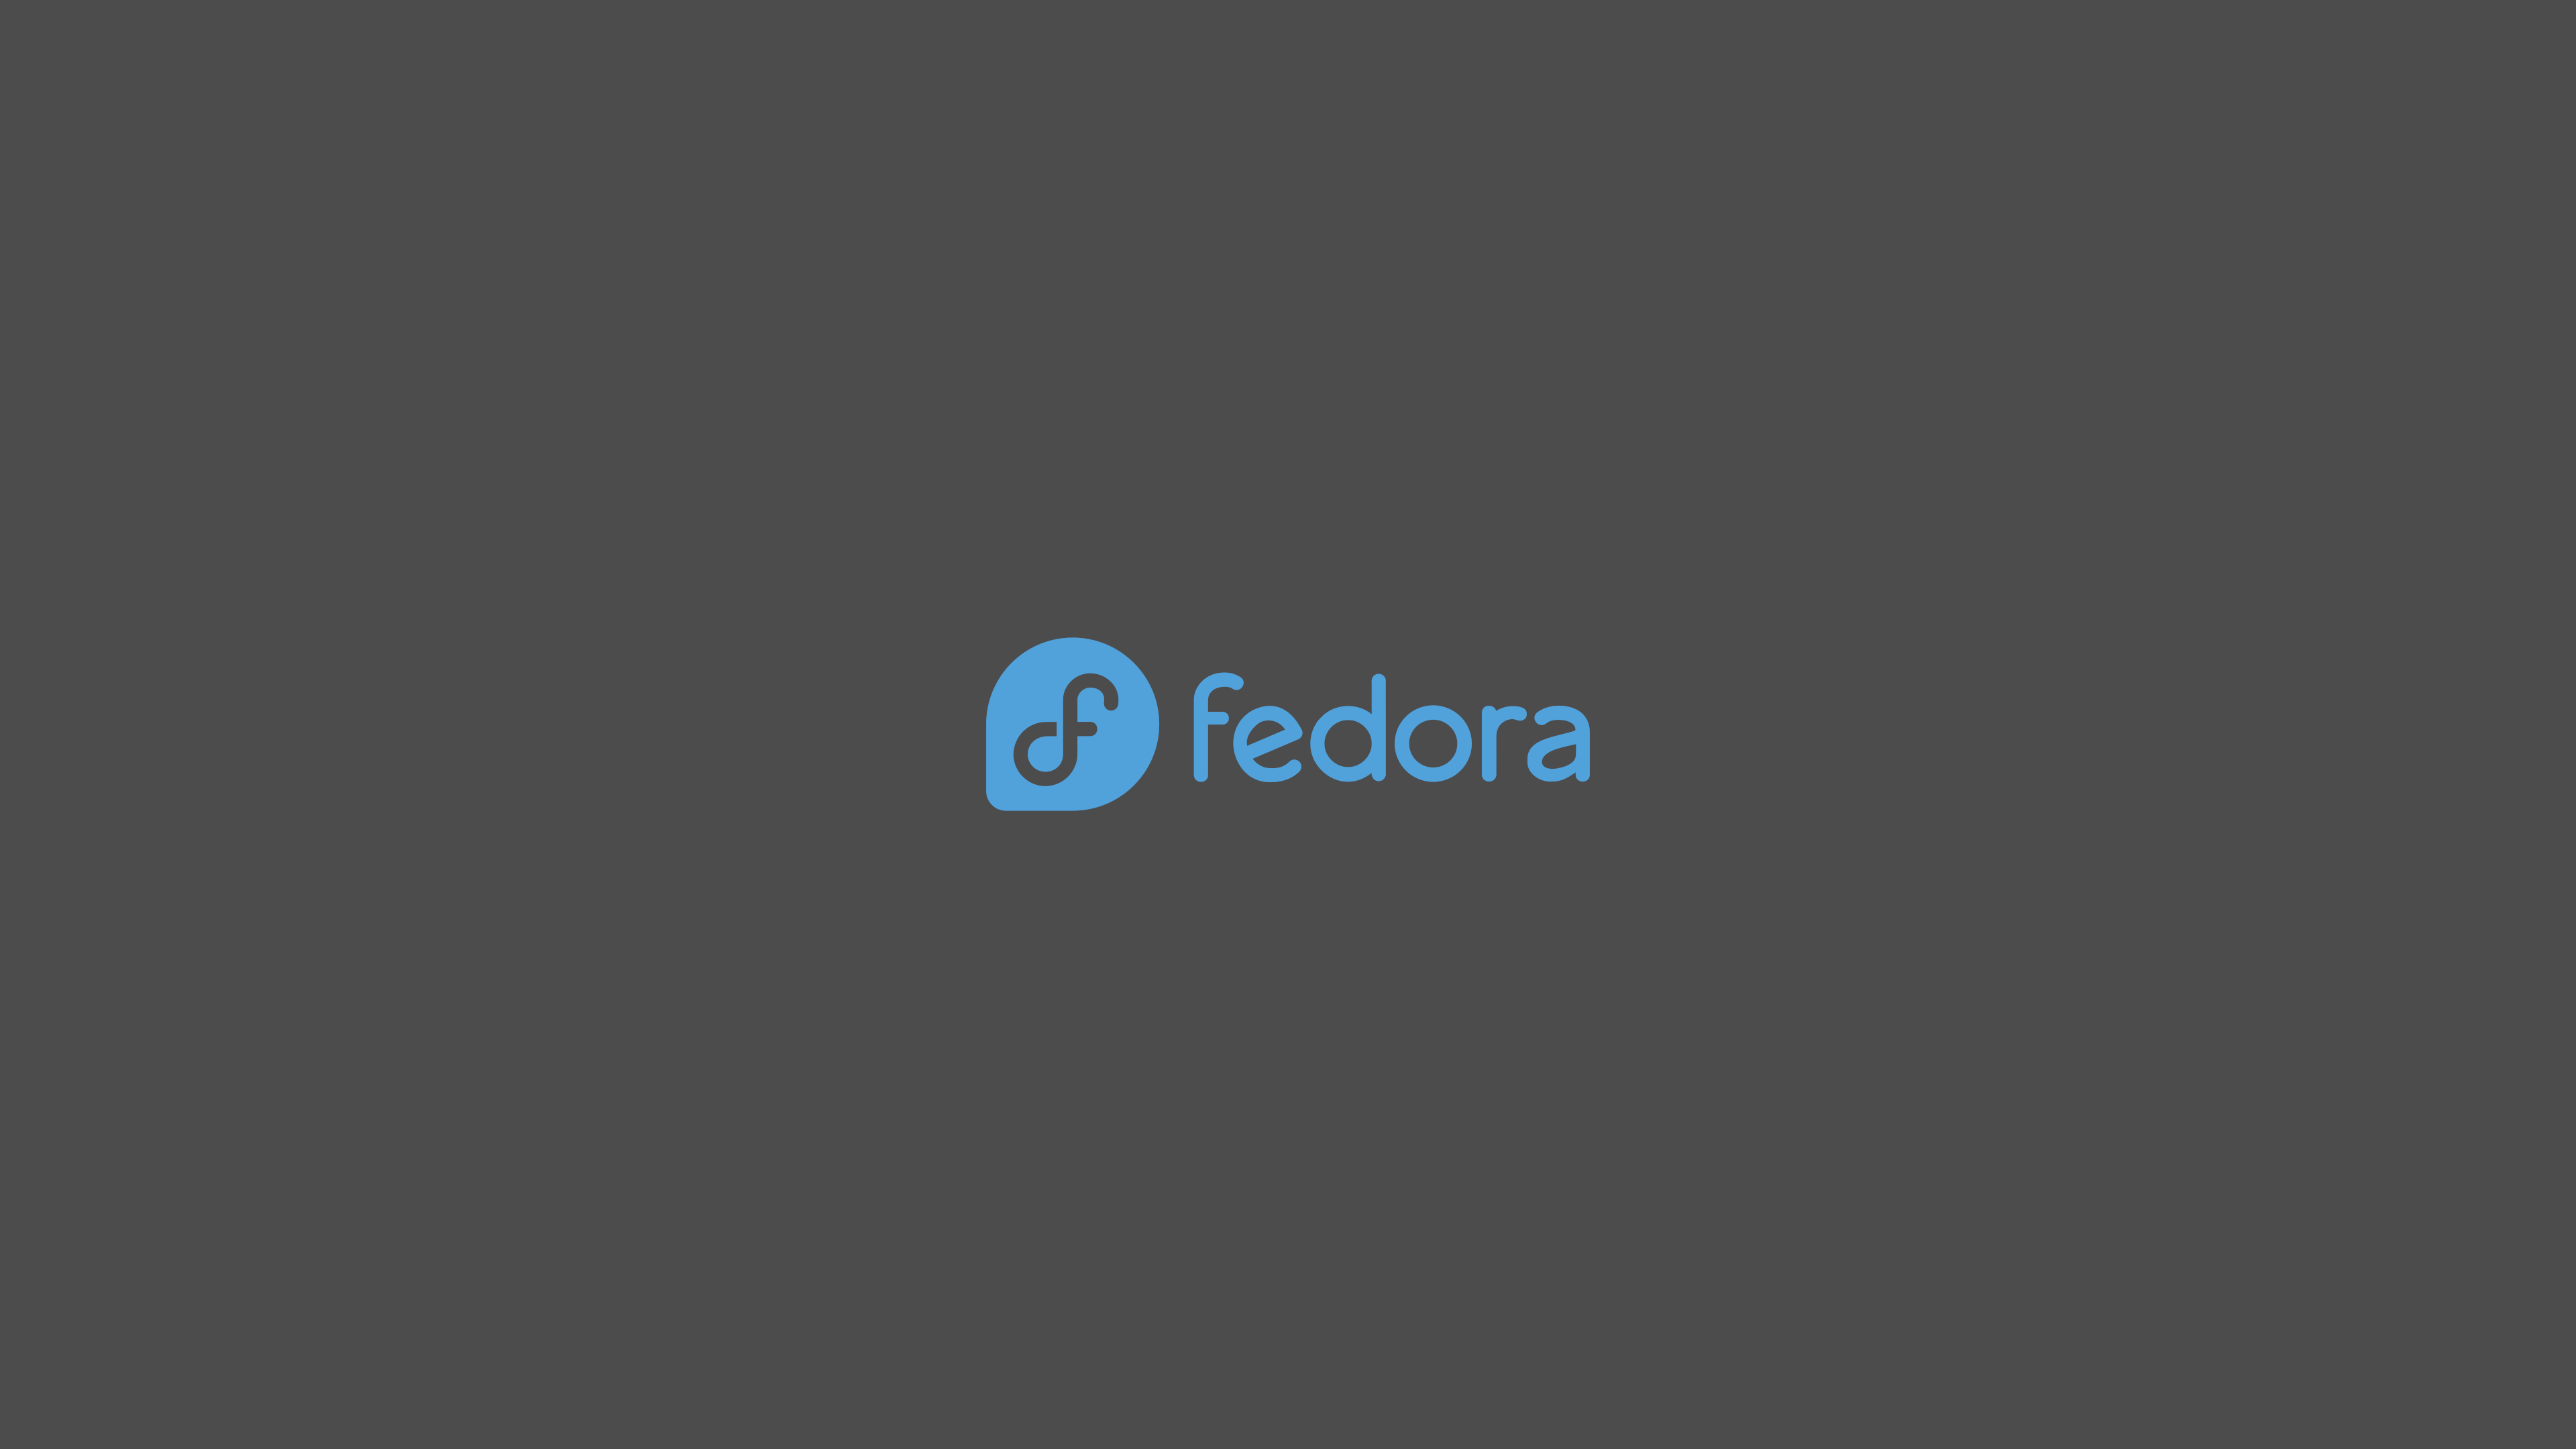 Fedora Unix Linux Logo Minimalism Gray Background Simple Background 3840x2160